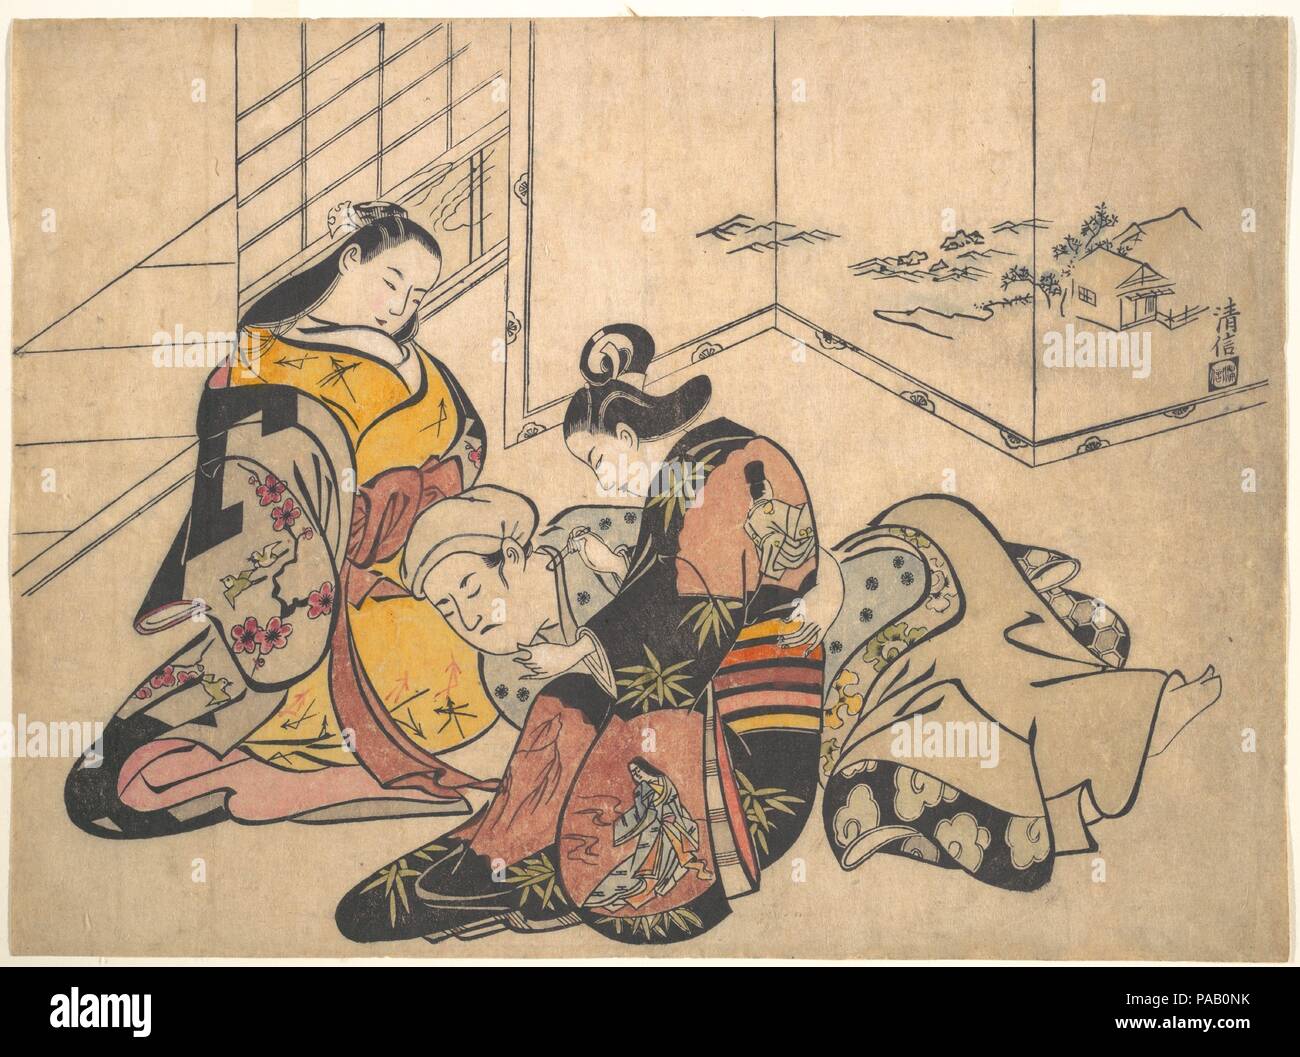 Imprimir. Artista: Torii Kiyonobu (japonés, 1664-1729). Cultura: Japón. Dimensiones: 10 3/4 x 14 1/2 pulg. (27,3 x 36,8 cm). Fecha: 1703. Museo: Museo Metropolitano de Arte, Nueva York, Estados Unidos. Foto de stock